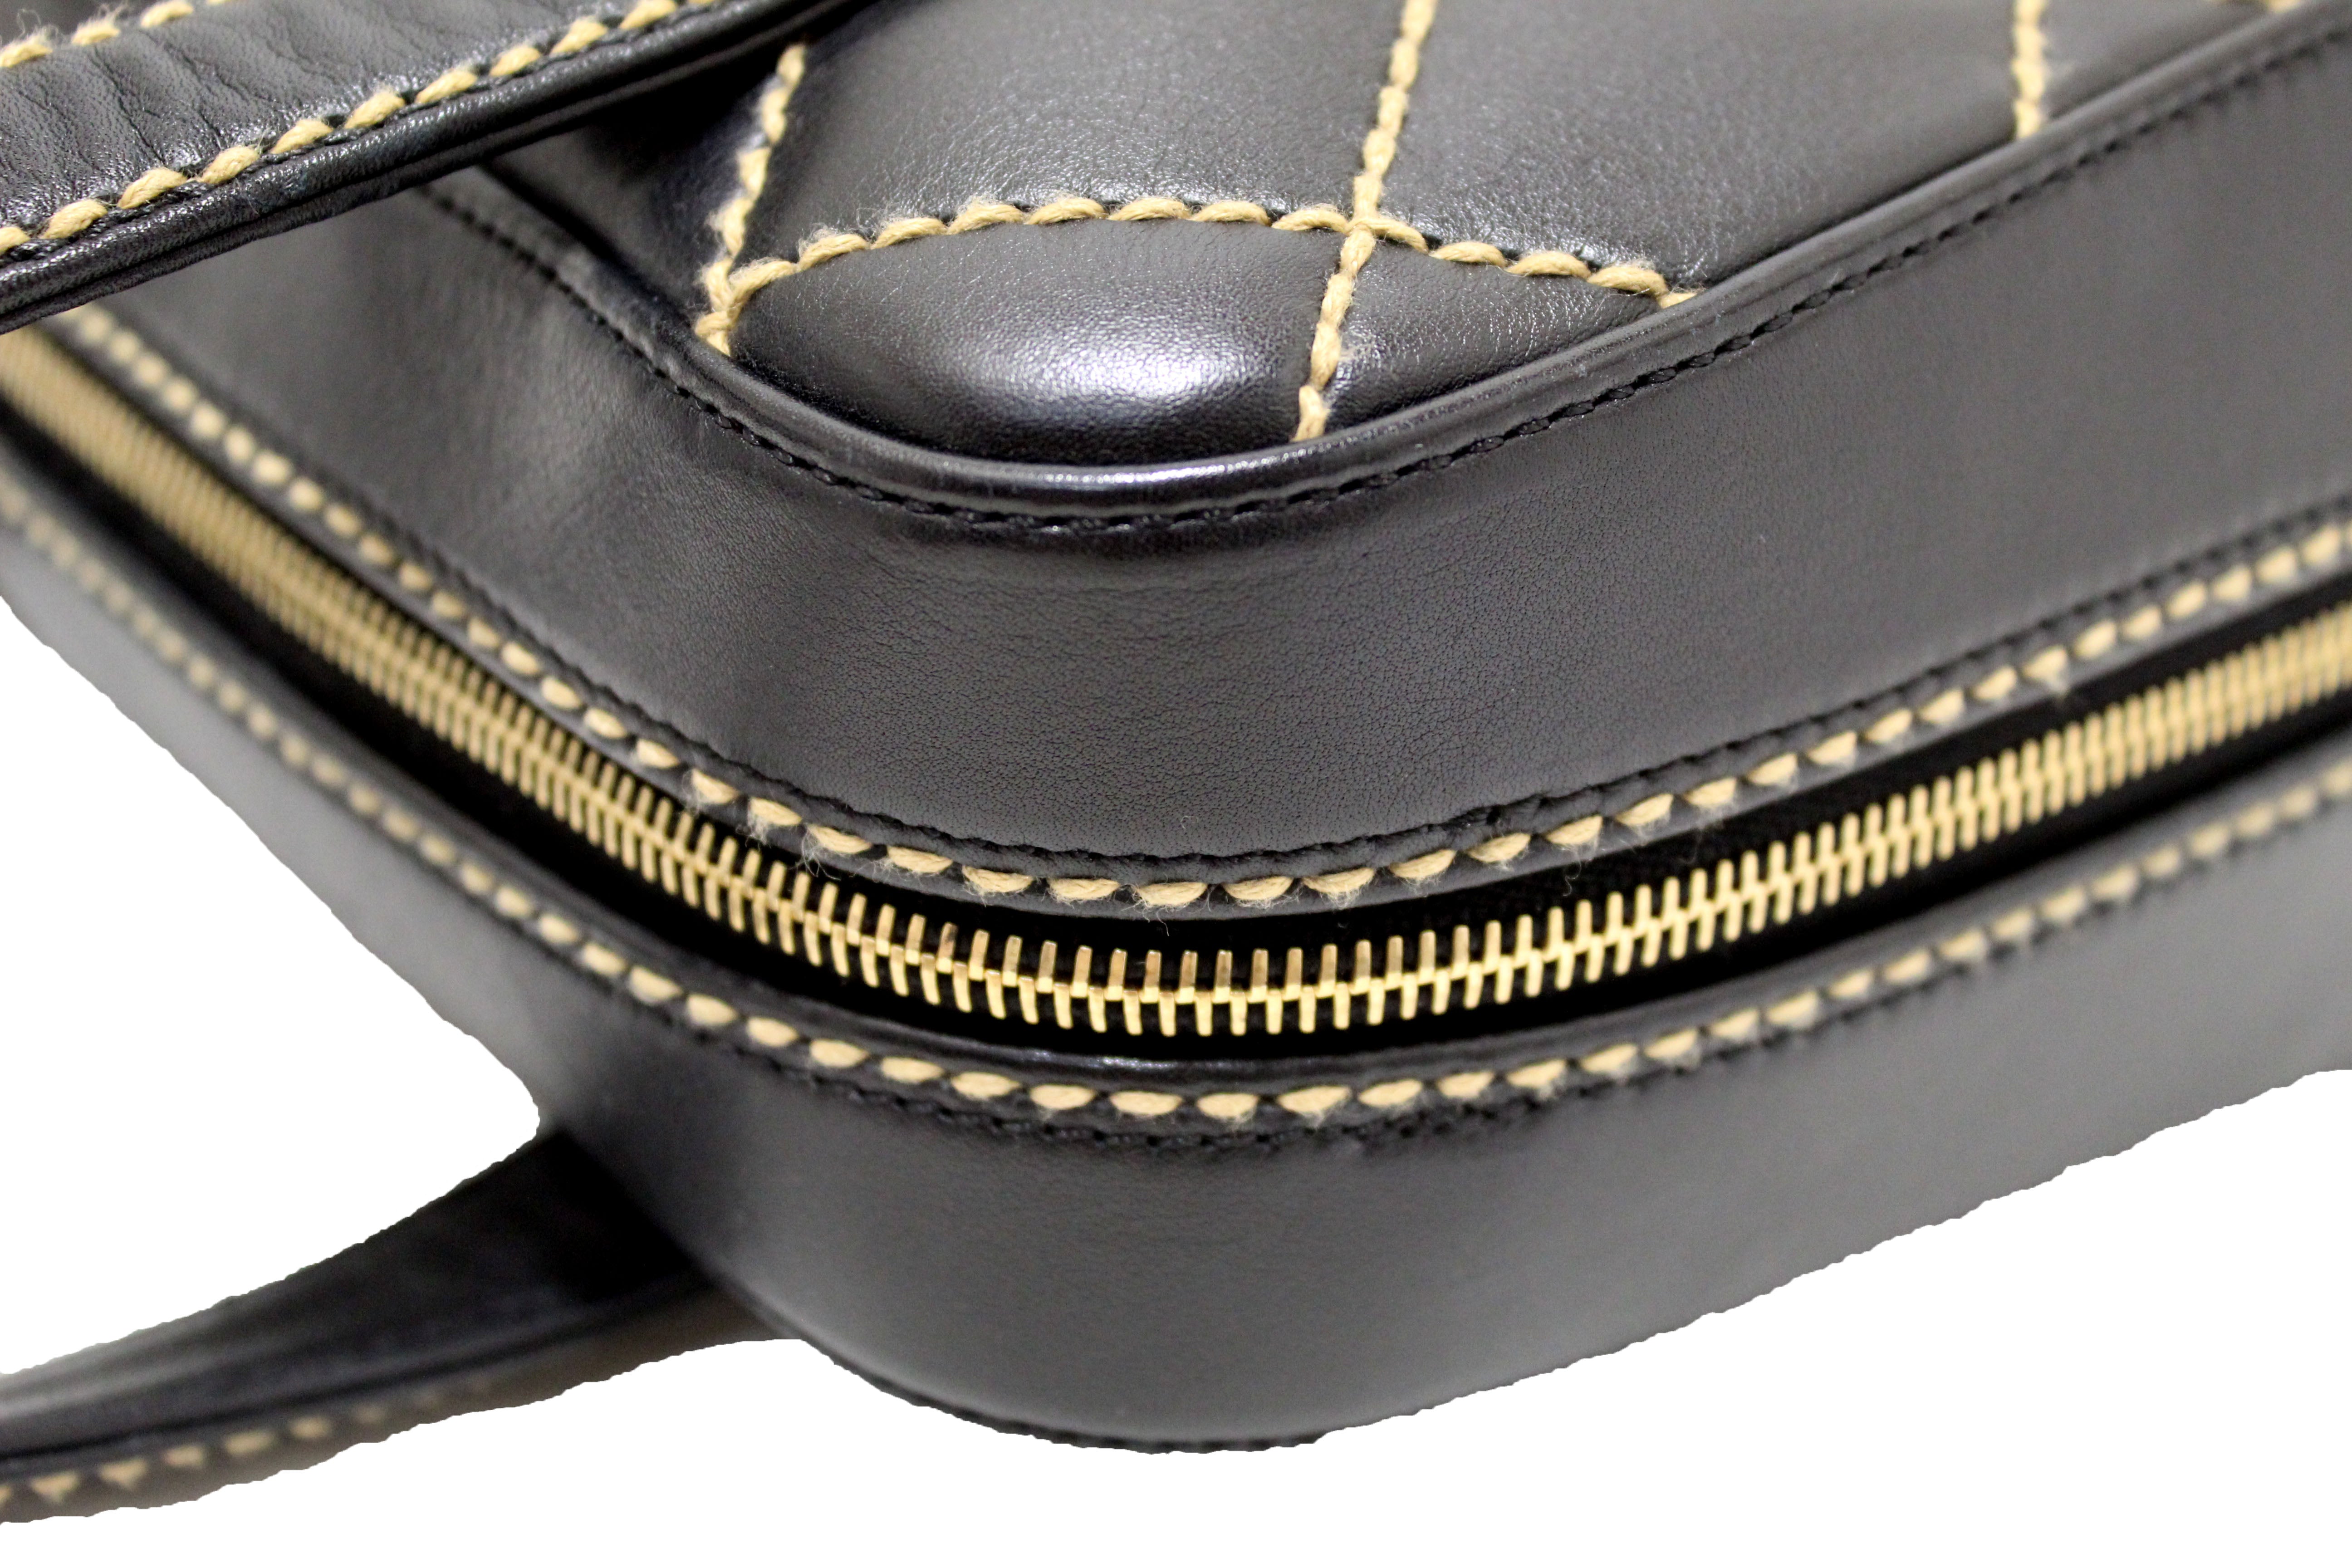 Authentic Chanel Black Calfskin Leather Contrast Stitch Surpique Bowler Bag